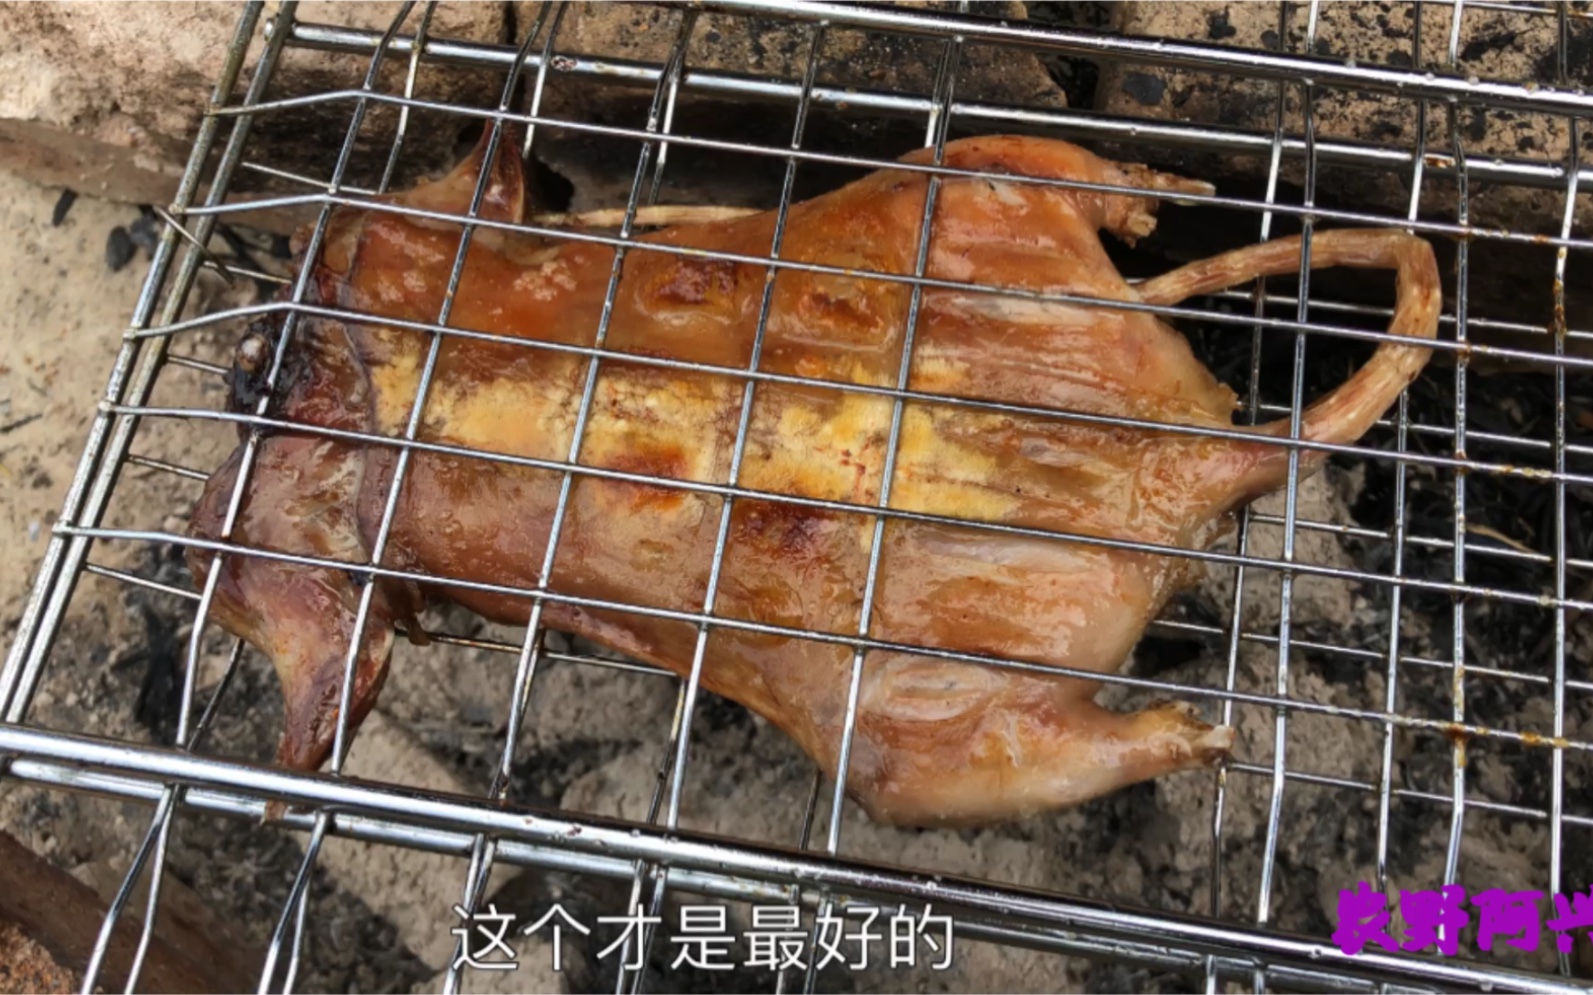 煎老鼠仔肉–好吃的台式豬排 by 阿嬤大飯店 - 愛料理